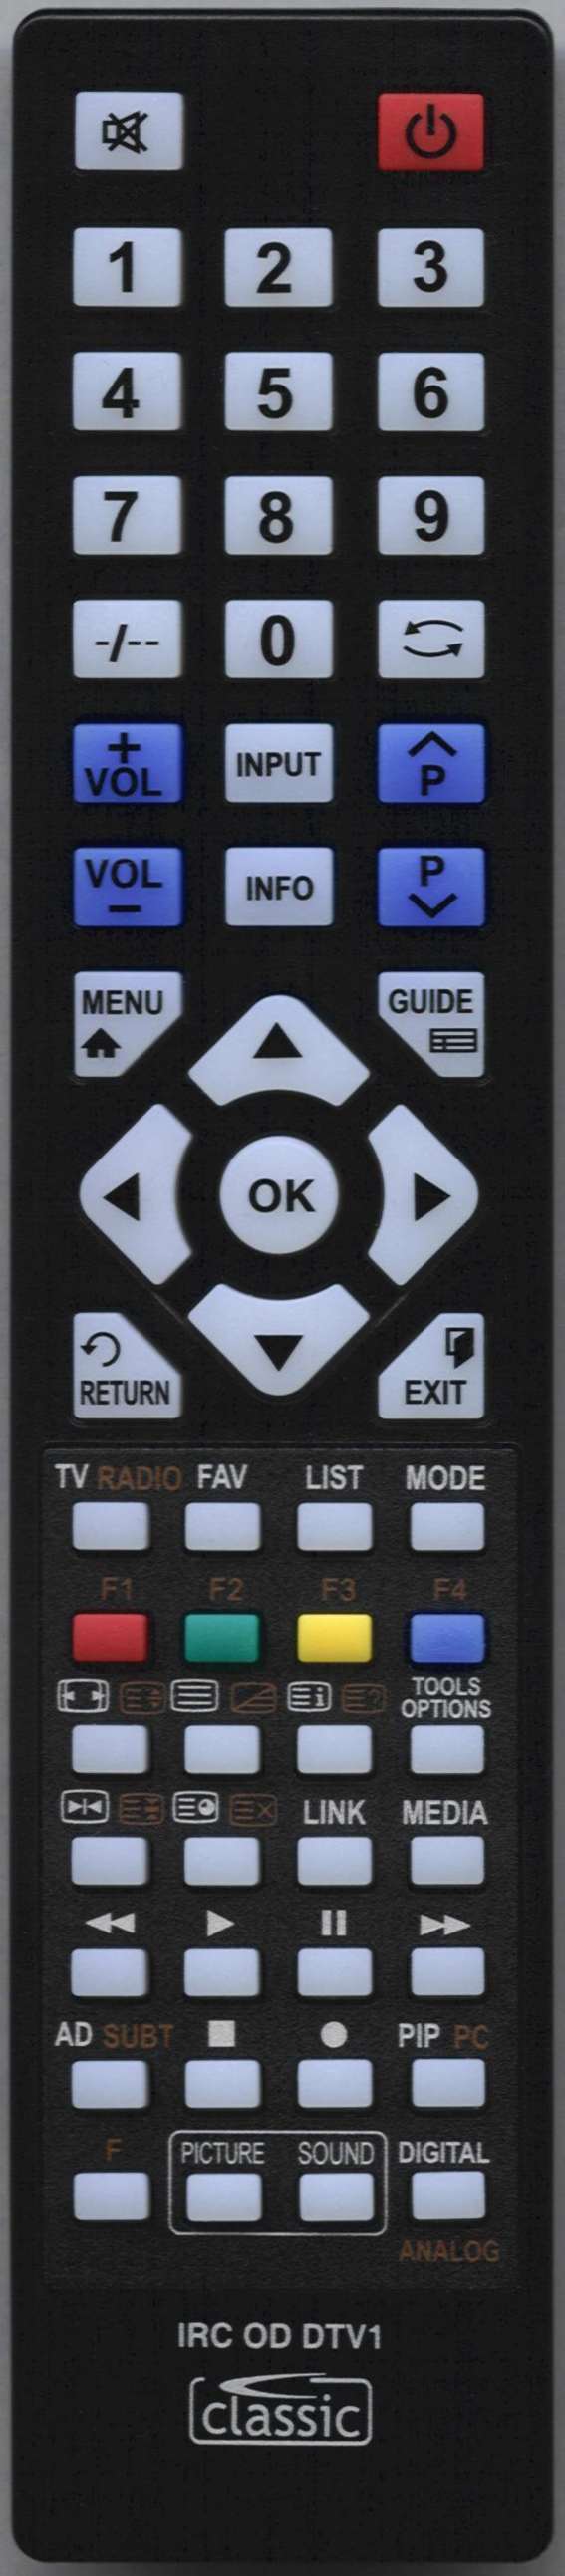 SEIKI LE32GY16-T3 Remote Control